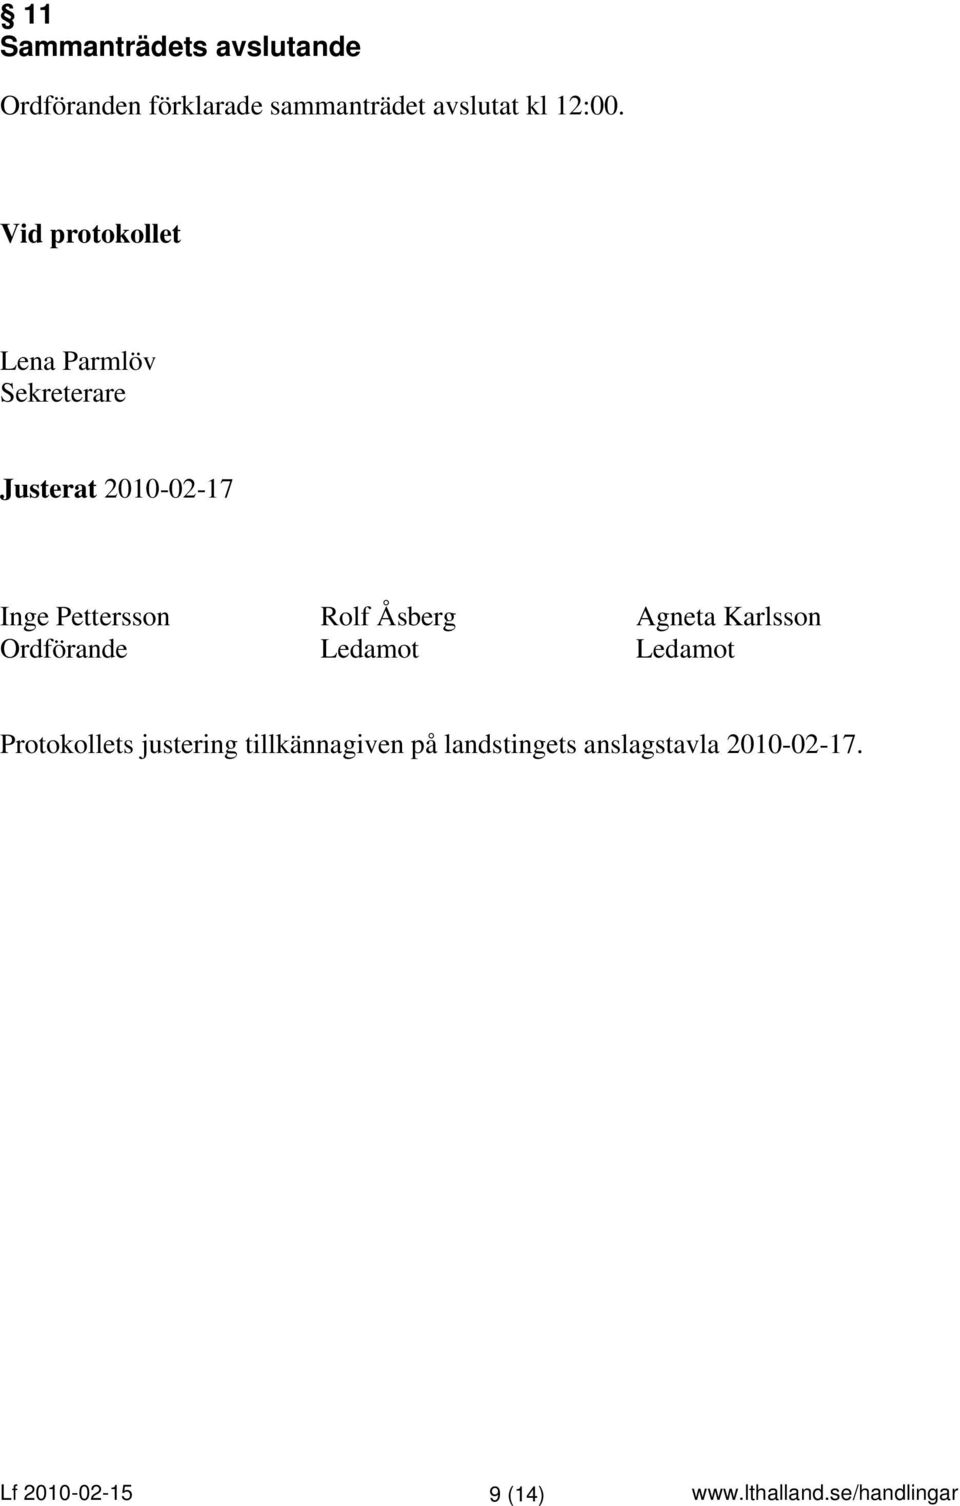 Vid protokollet Lena Parmlöv Sekreterare Justerat 2010-02-17 Inge